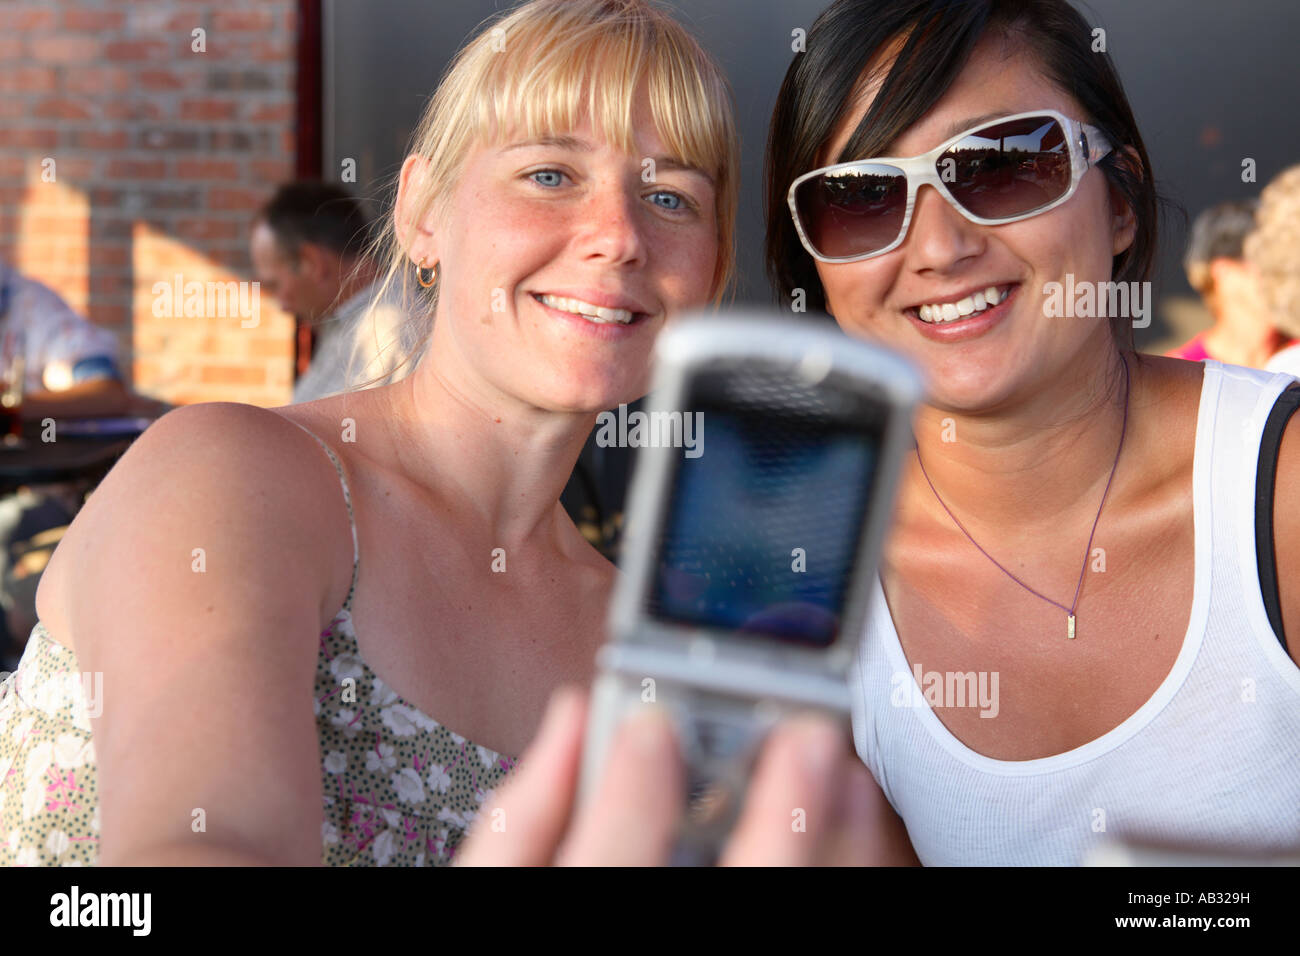 Due venti qualcosa di ragazze prendere autoritratto con cellulare fotocamera Foto Stock